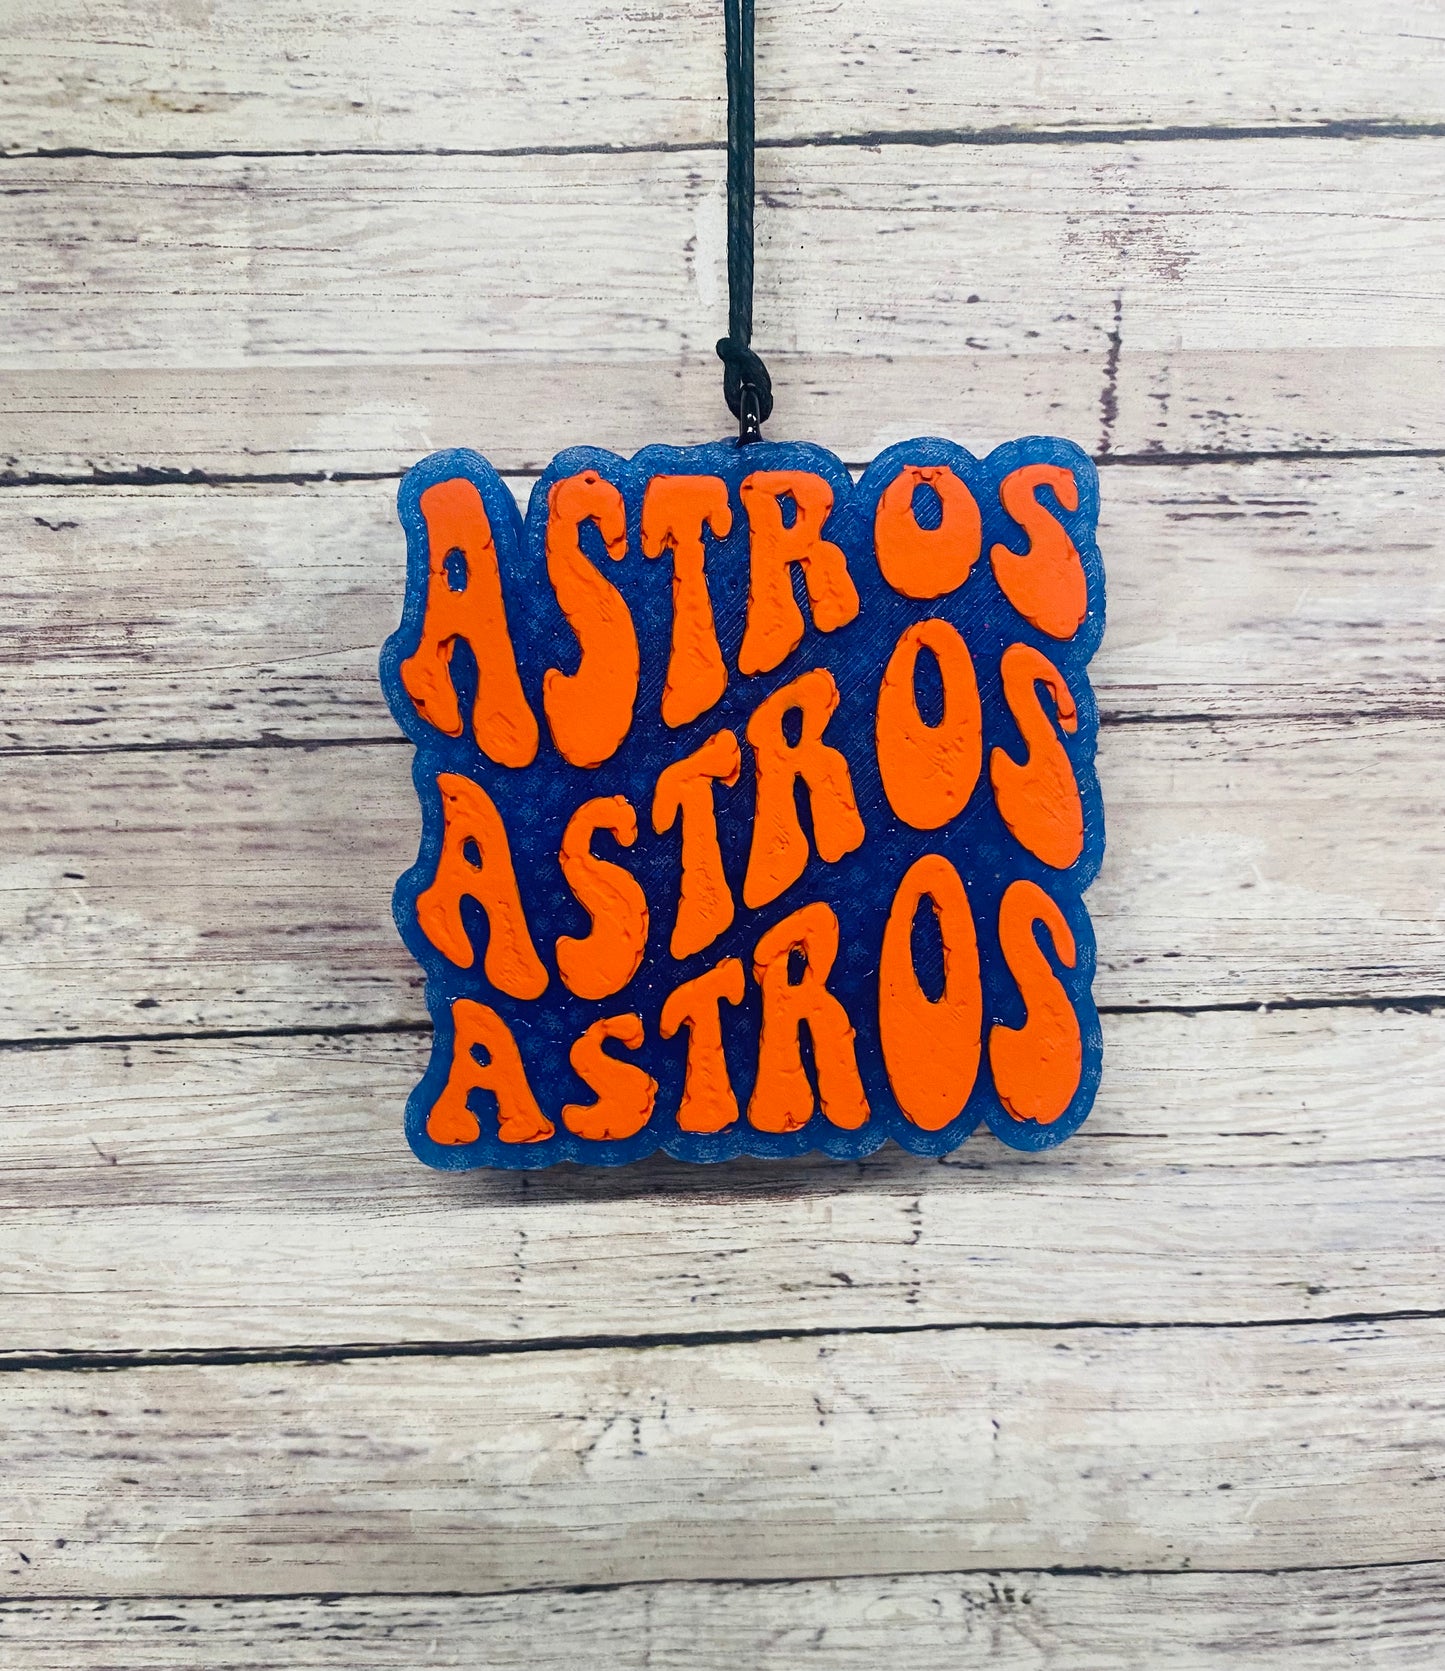 Astros Astros Astros